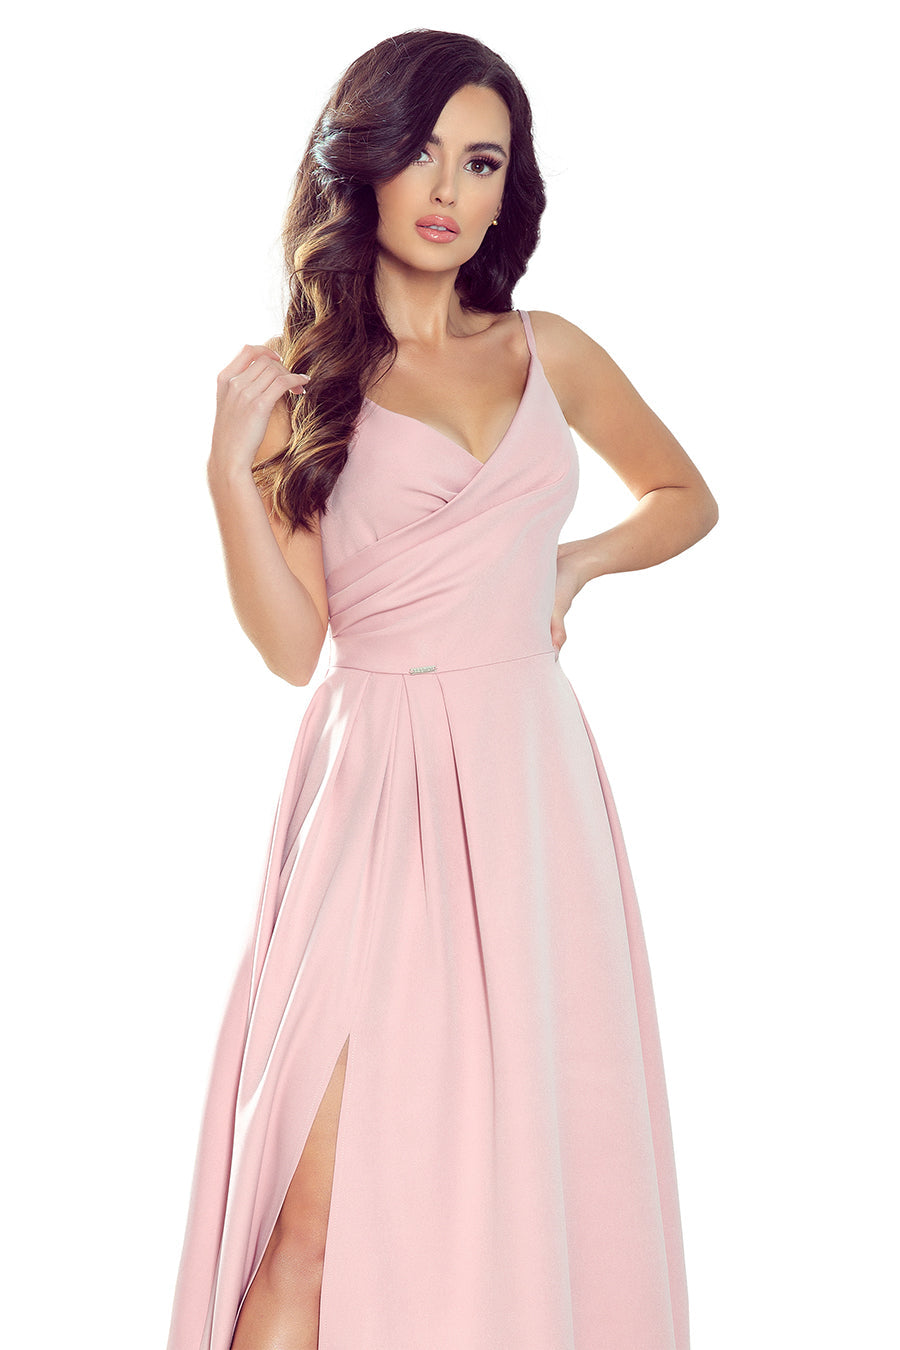 Γυναικείο φόρεμα Charlotte, Ροζ 2